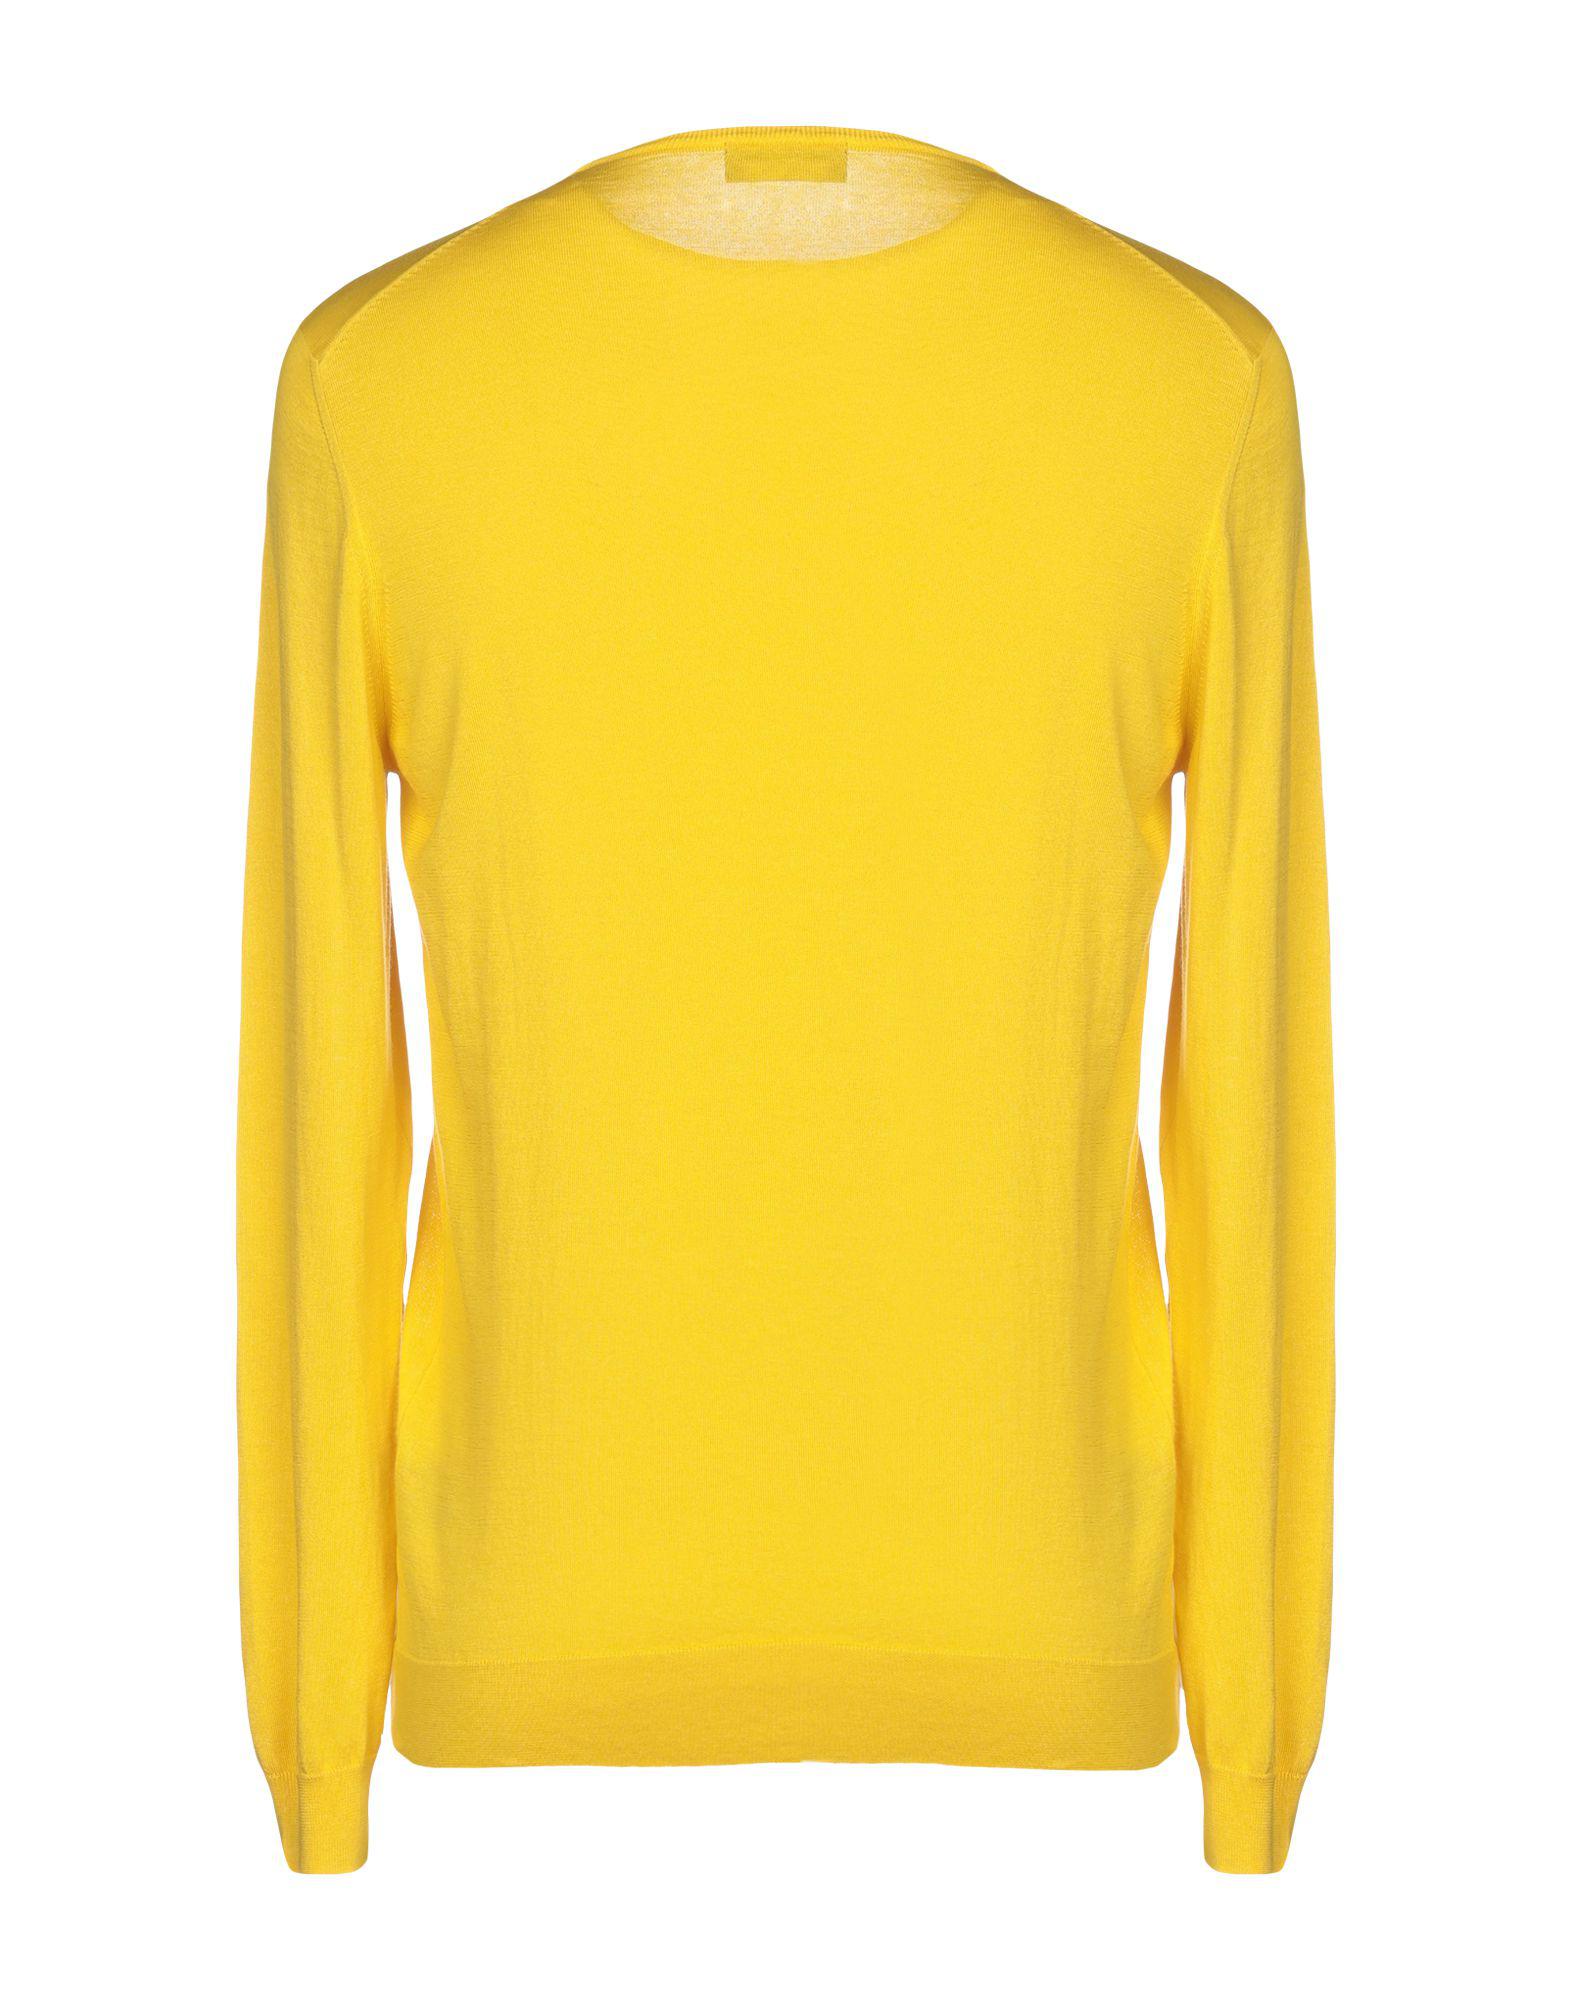 Drumohr Cotton Jumper in Yellow for Men - Lyst